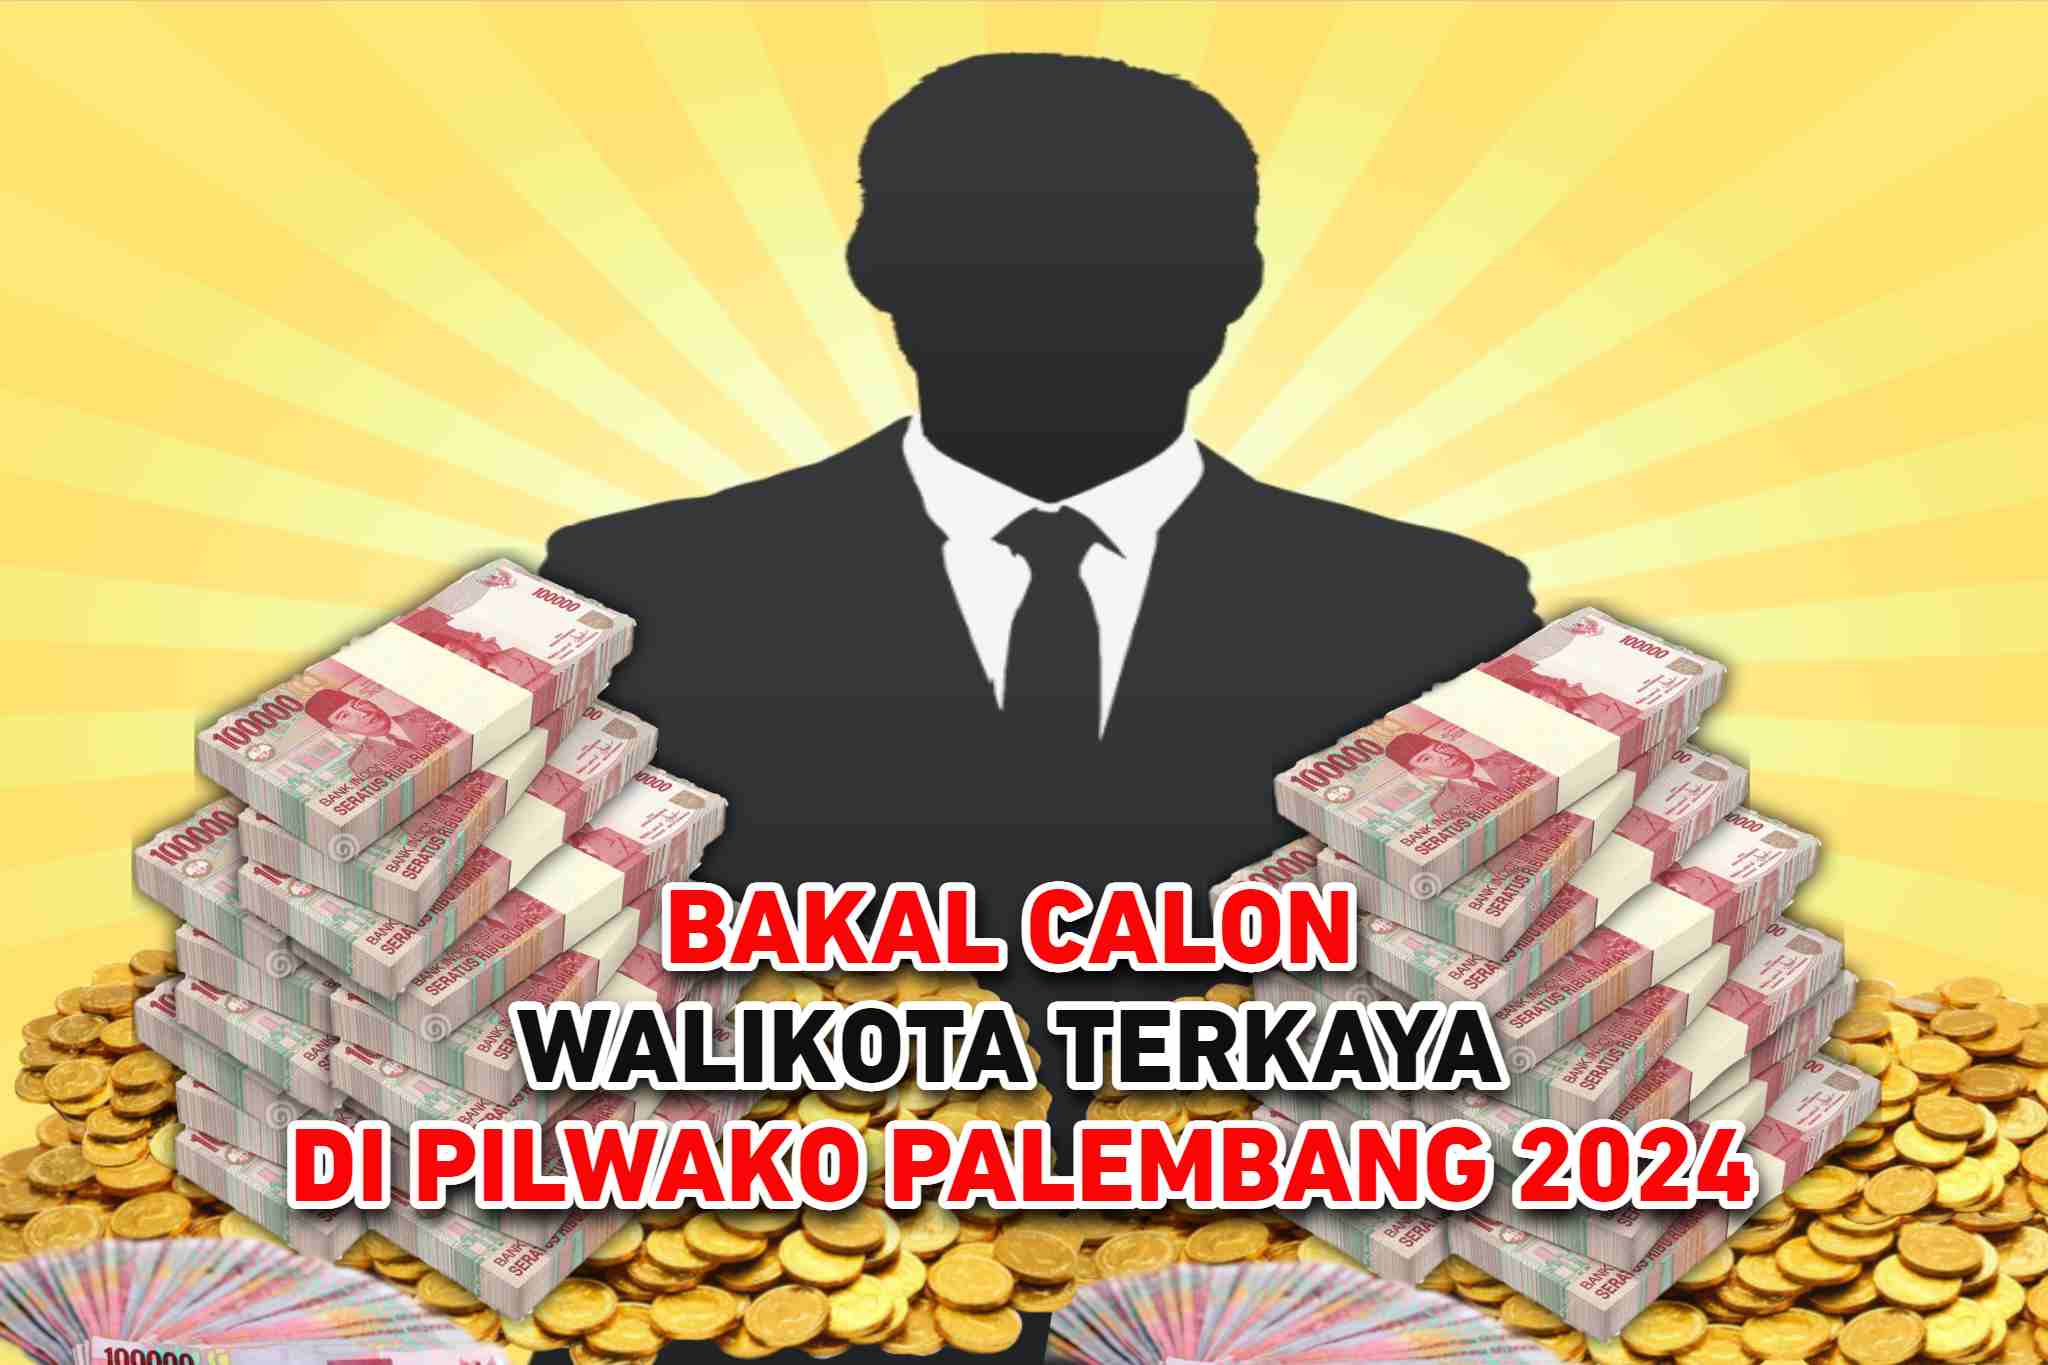 Inilah Sumber Kekayaan Bakal Calon Walikota Terkaya di Pilwako Palembang 2024, Siapa?